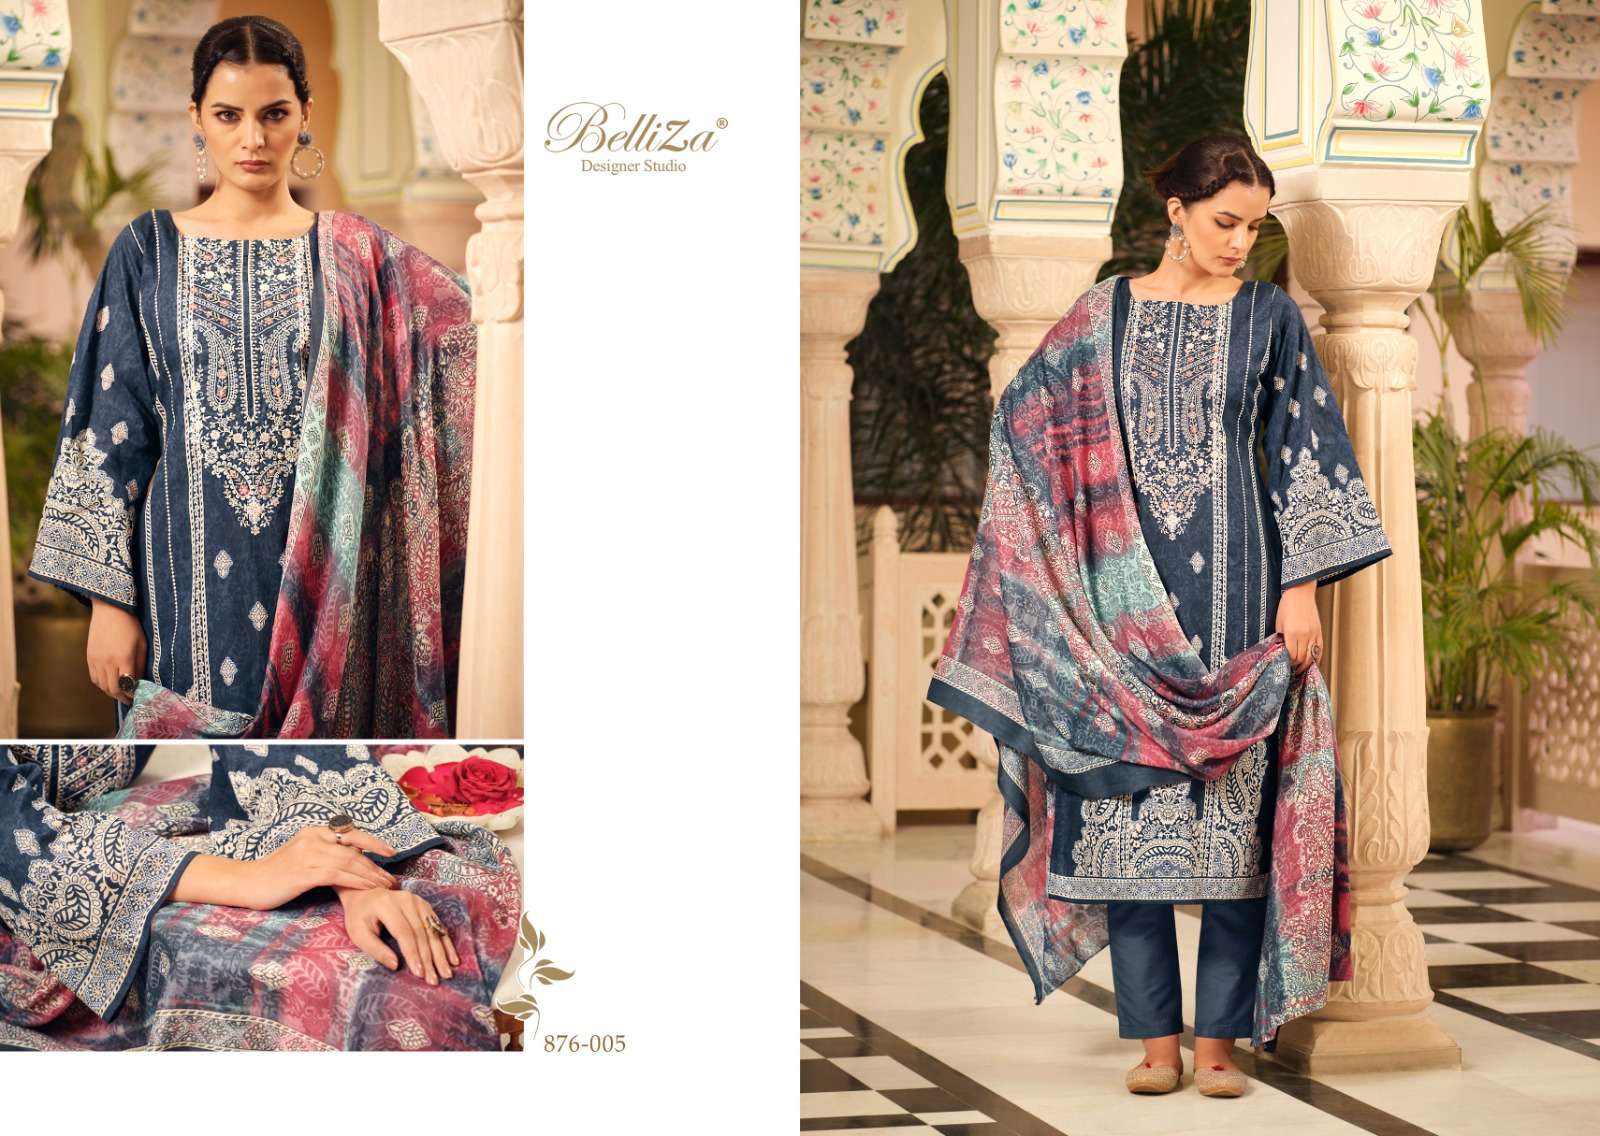 Belliza Naira Vol 32 Premium Designer Dress Material Wholesale catalog